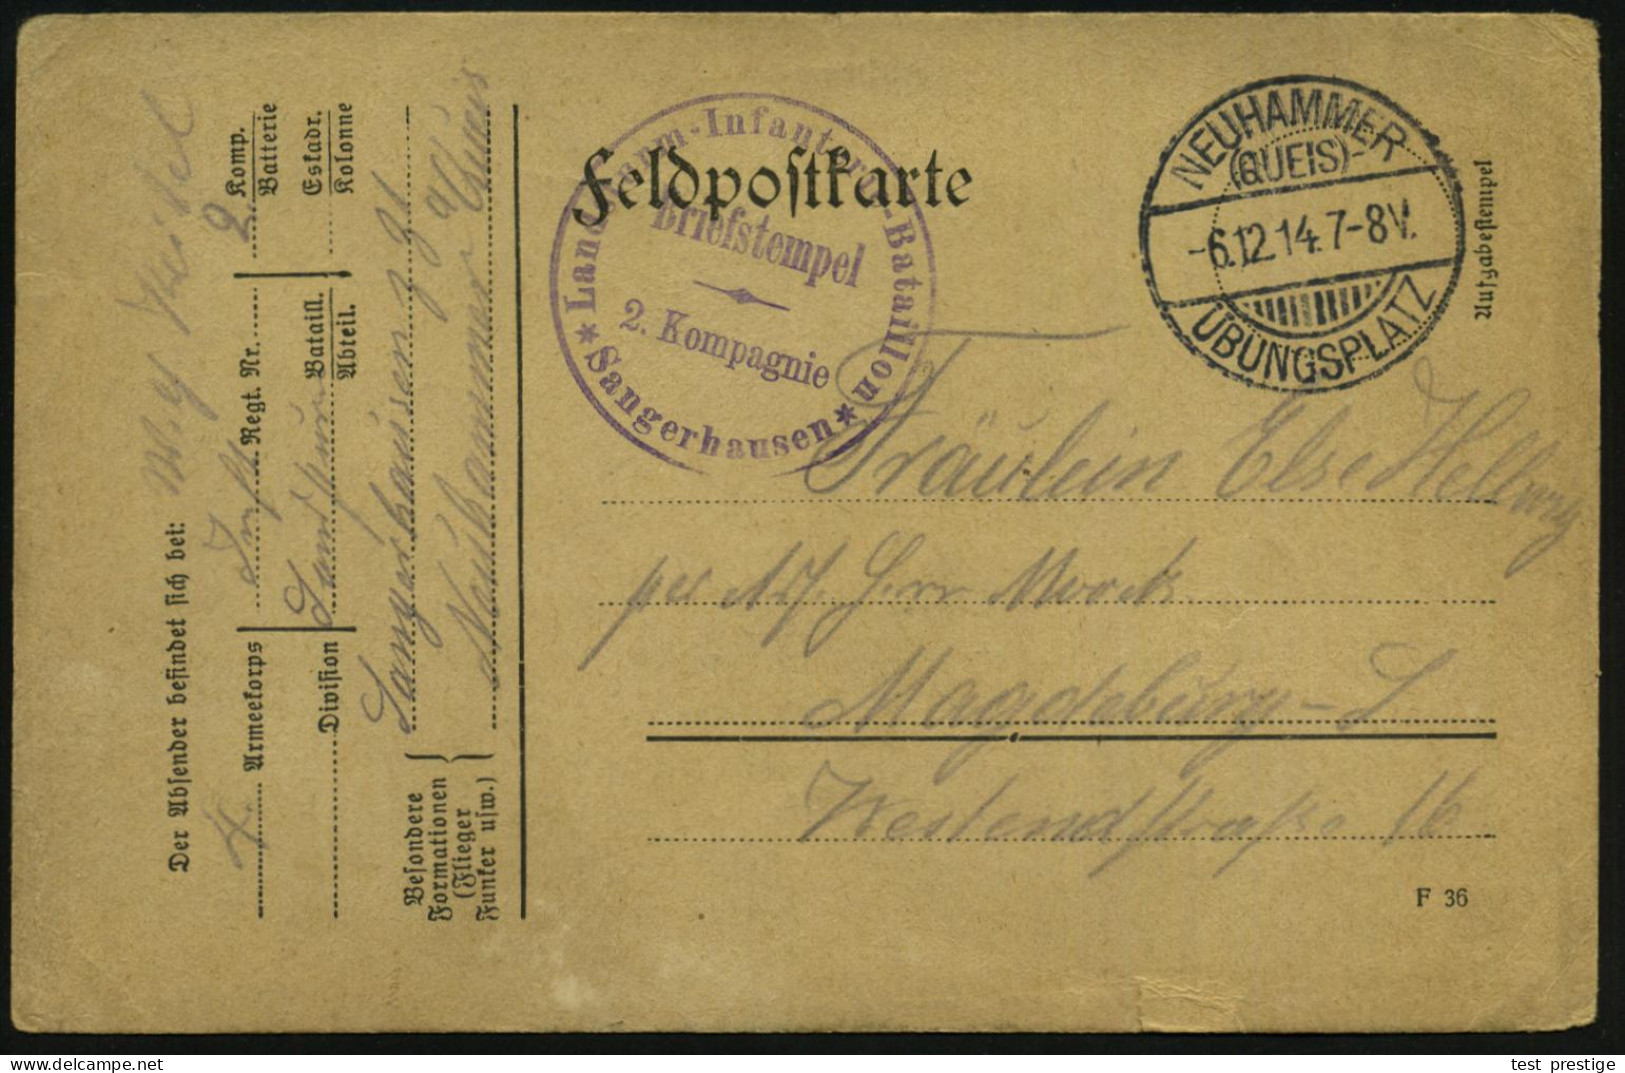 NEUHAMMER/ (QUEIS)/ ÜBUNGSPLATZ 1914 (6.12.) 1K-Gitter = Hauspostamt Truppenübungsplatz + Viol. 1K-HdN: Landsturm-Infant - WW1